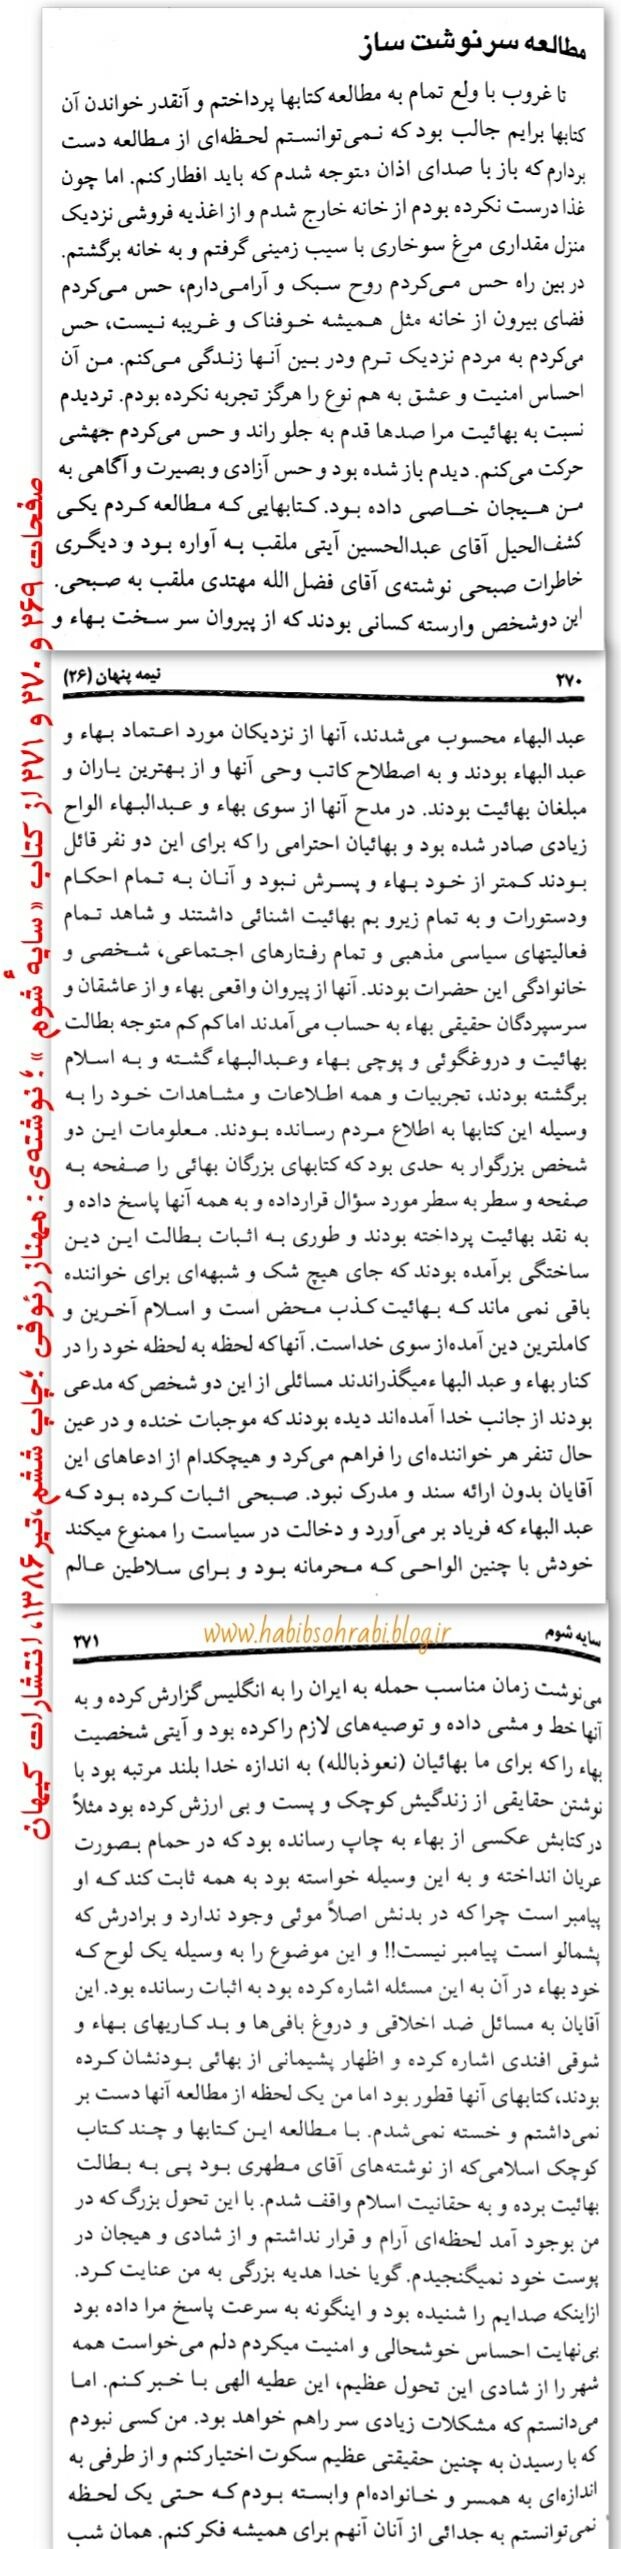 صفحاتی از کتاب سایه شوم نوشته مهناز رئوفی چاپ ۱۳۸۶ انتشارات کیهان